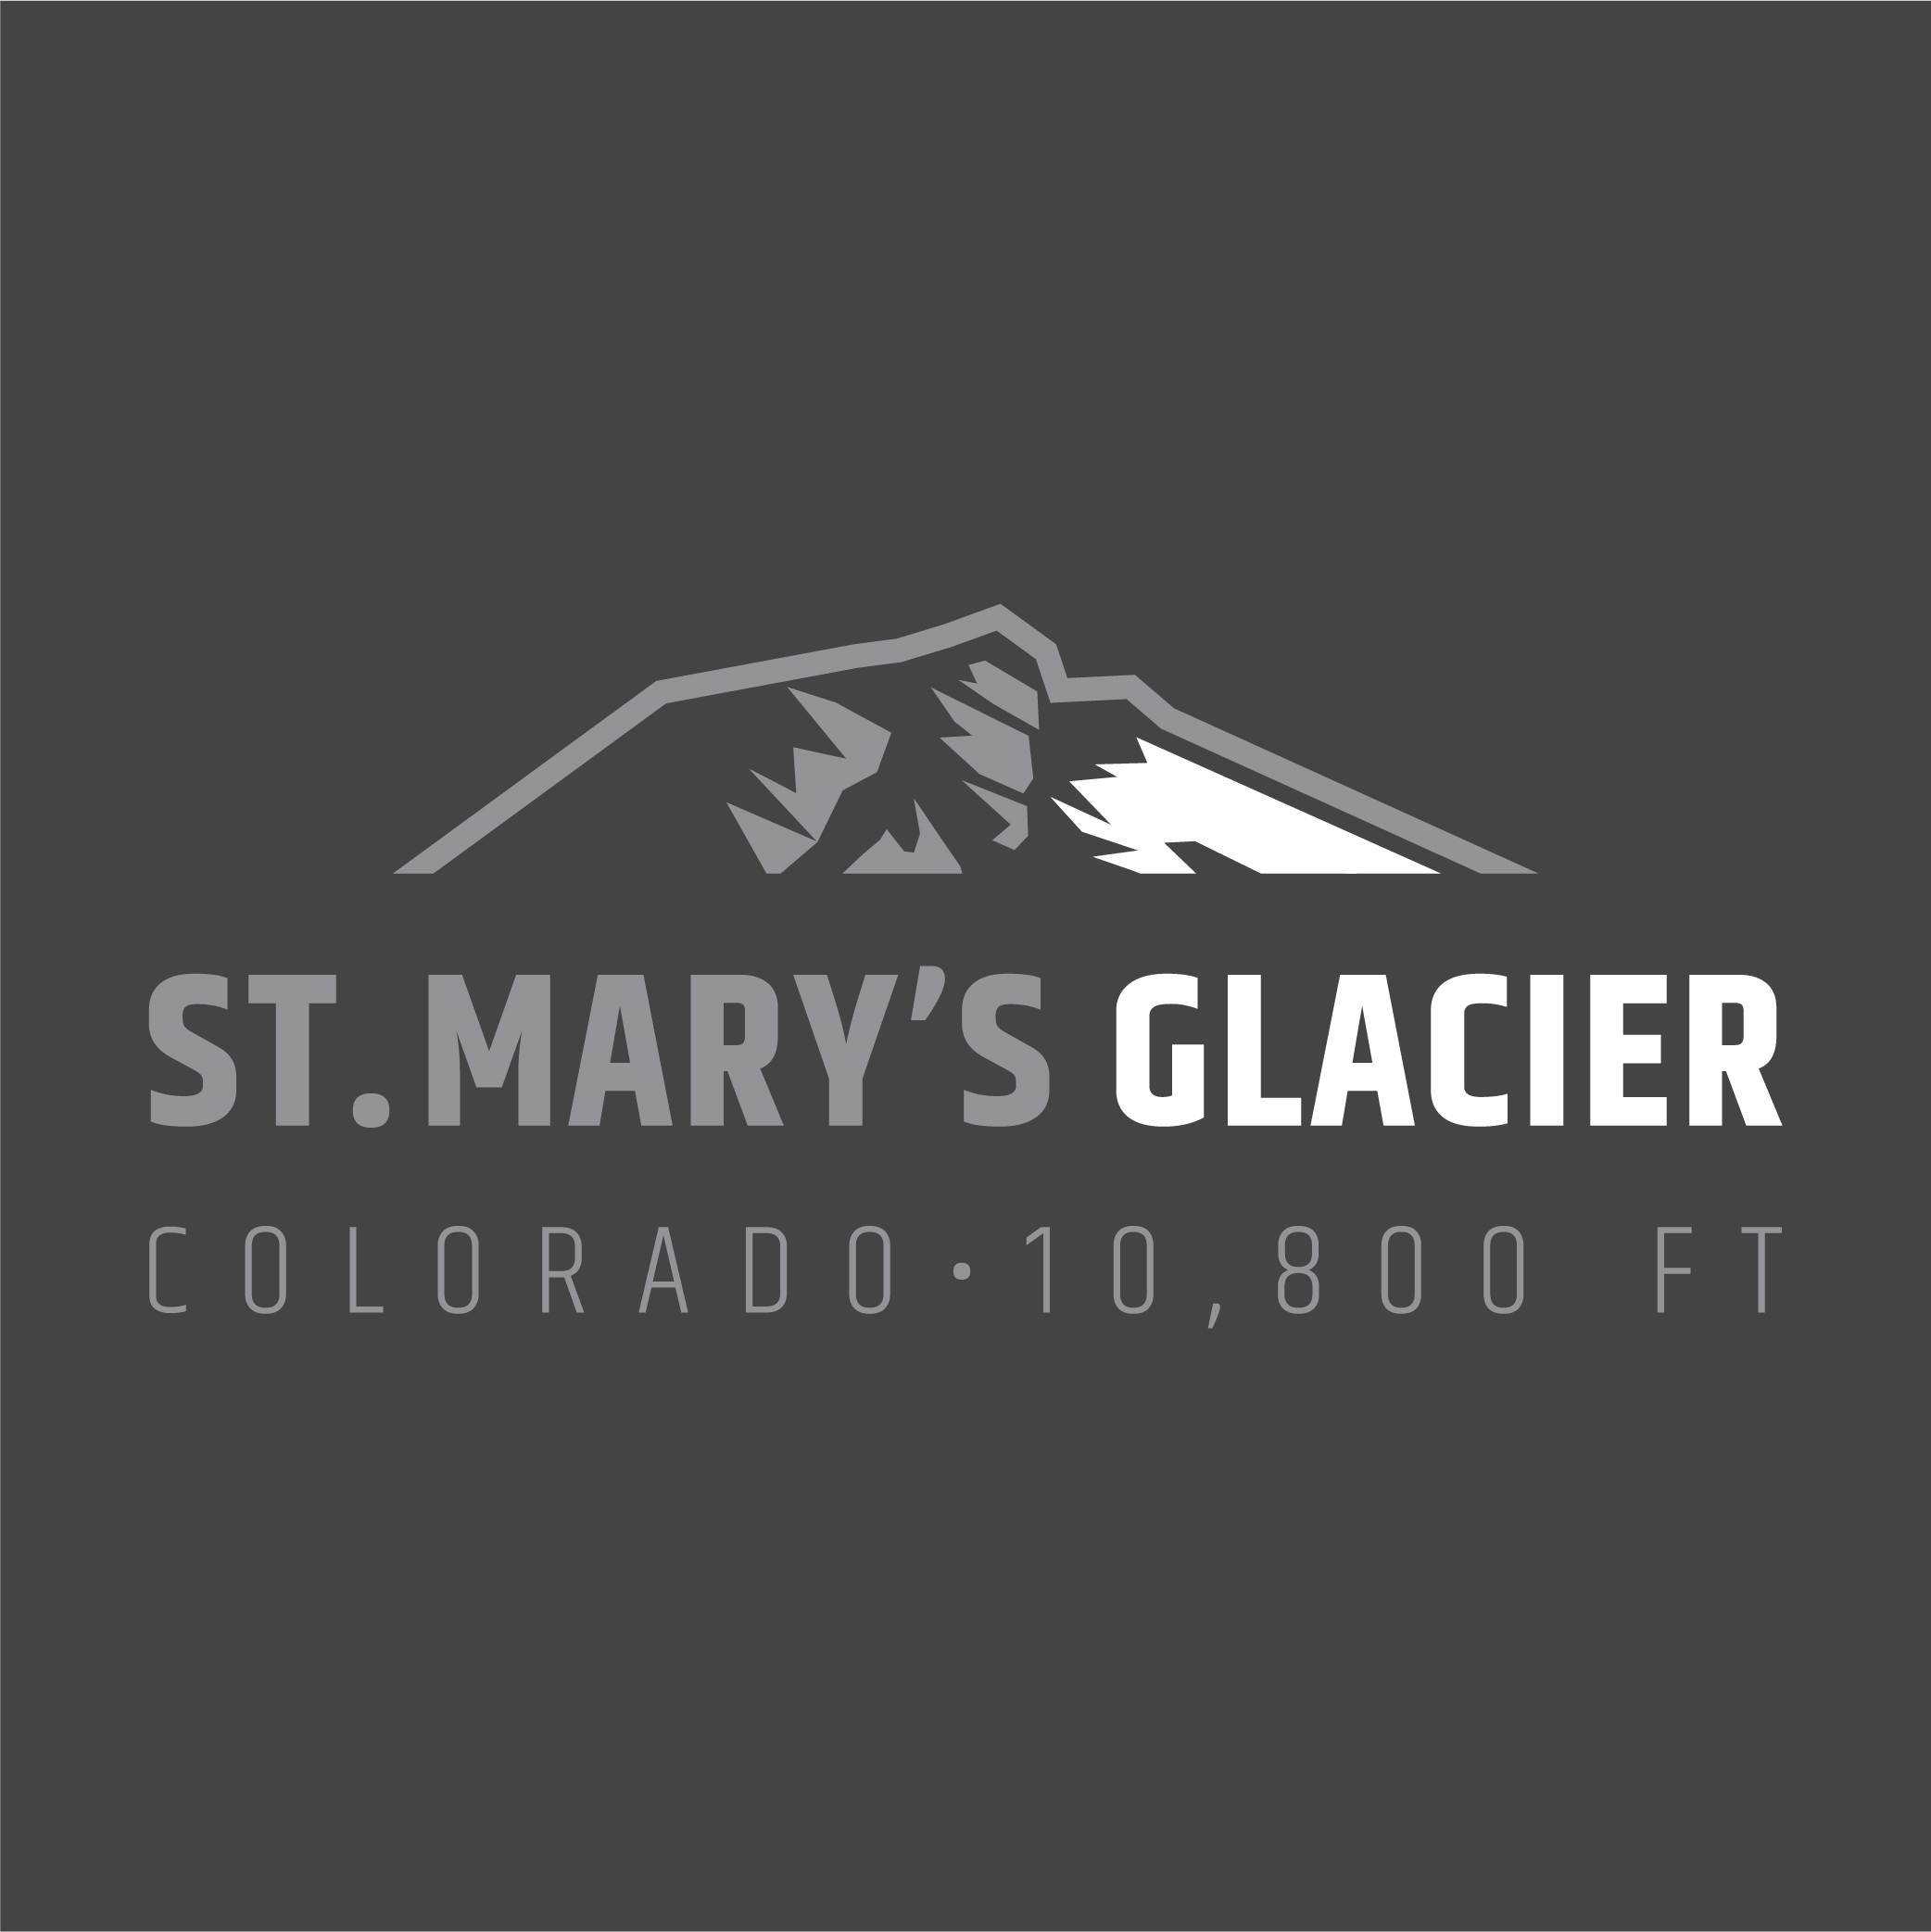 St. Mary's Glacier